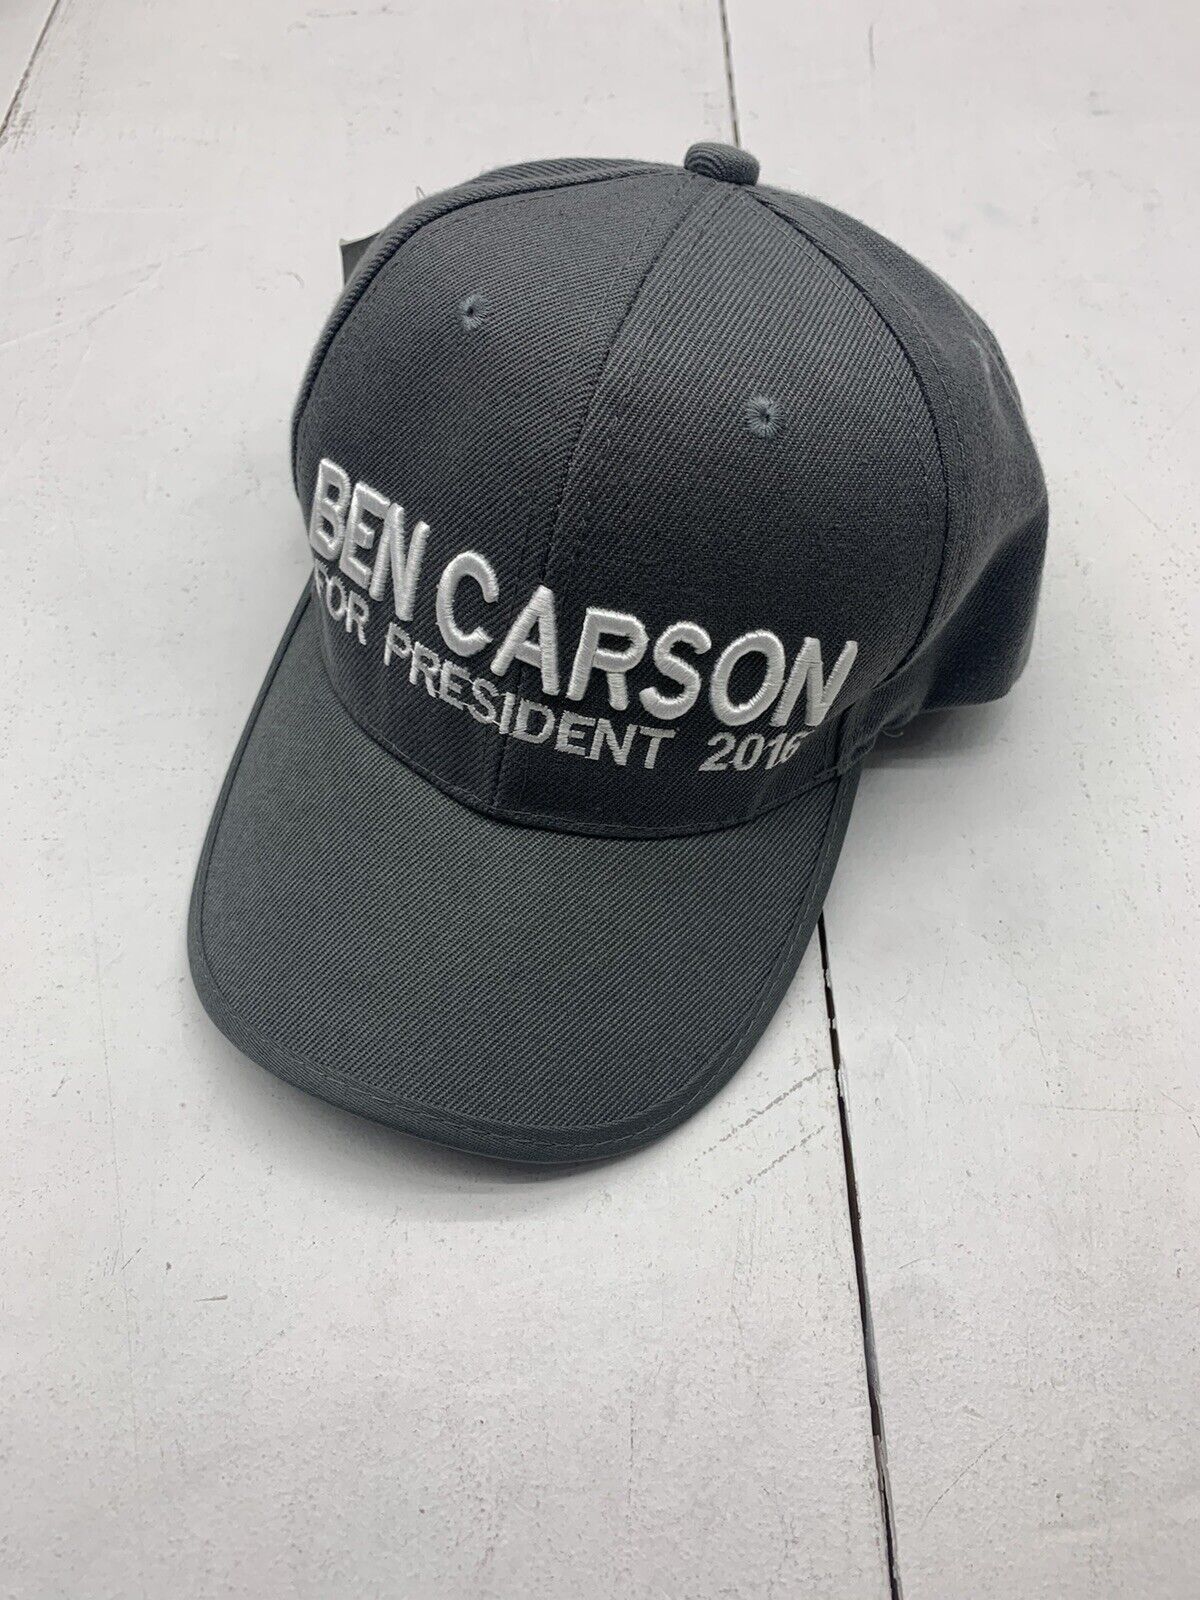 Ben Carson Grey Adjustable Cap